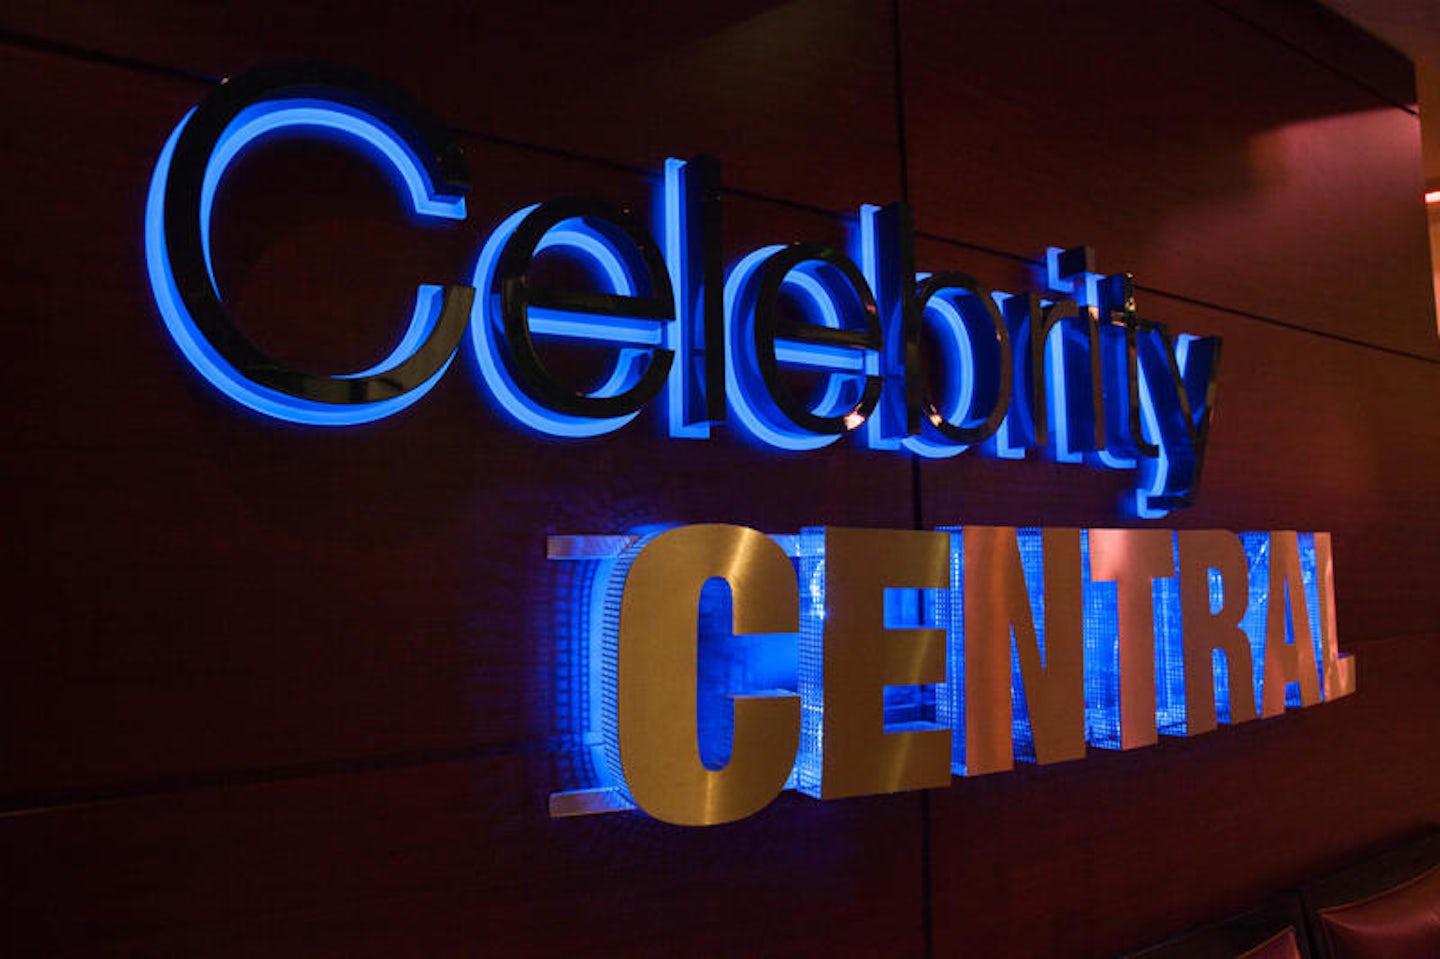 Celebrity Central on Celebrity Eclipse